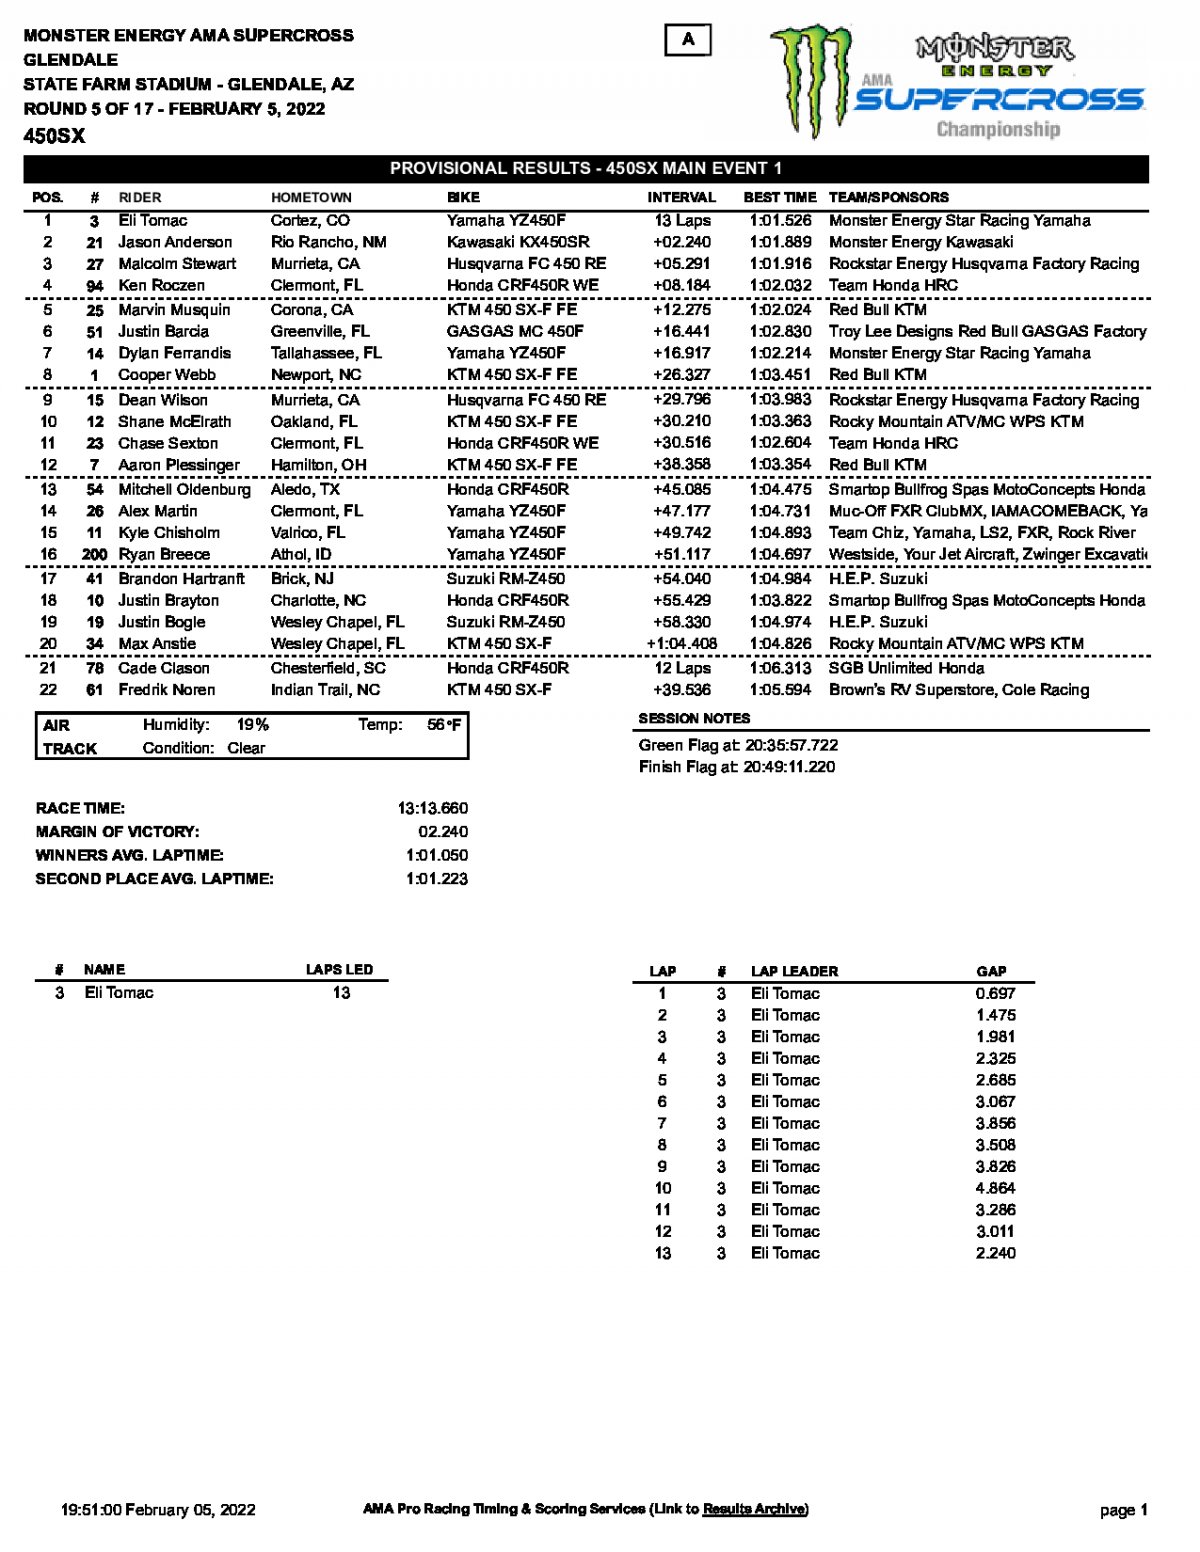 Результаты 1 гонки 5-го этапа AMA Supercross, Glendale (5/02/2022)